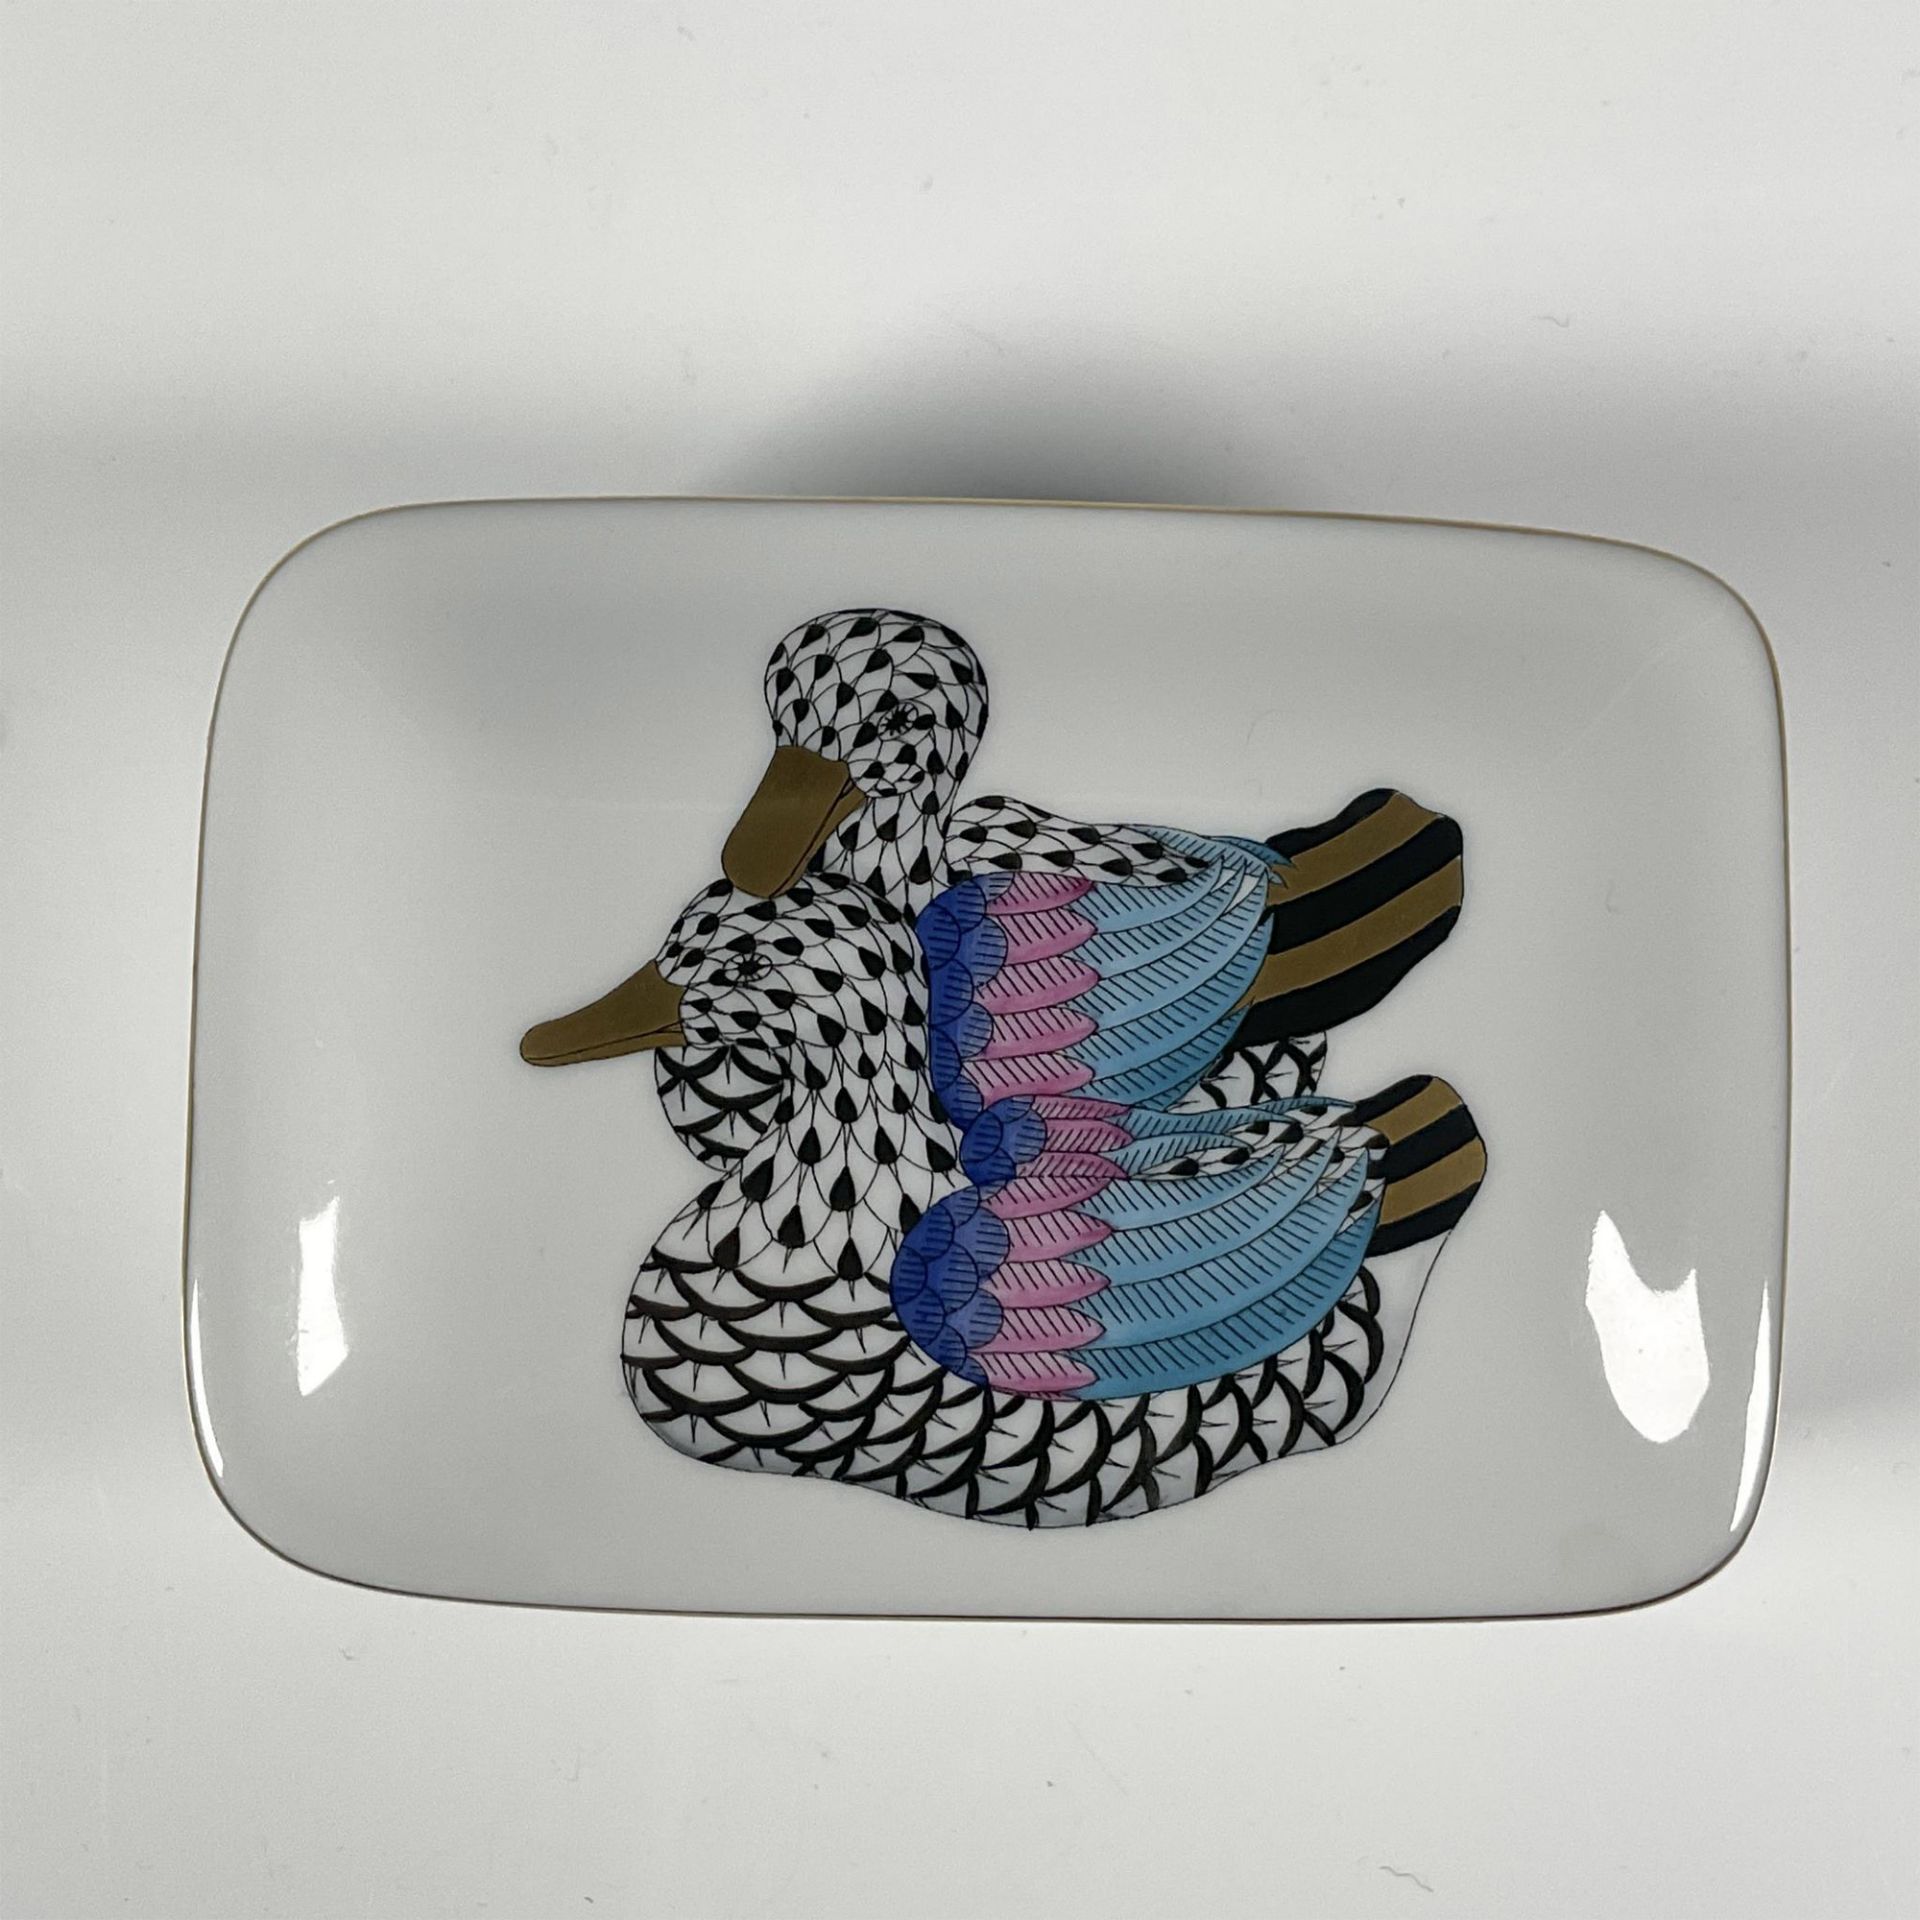 Herend Porcelain Trinket Box, Pair of Ducks